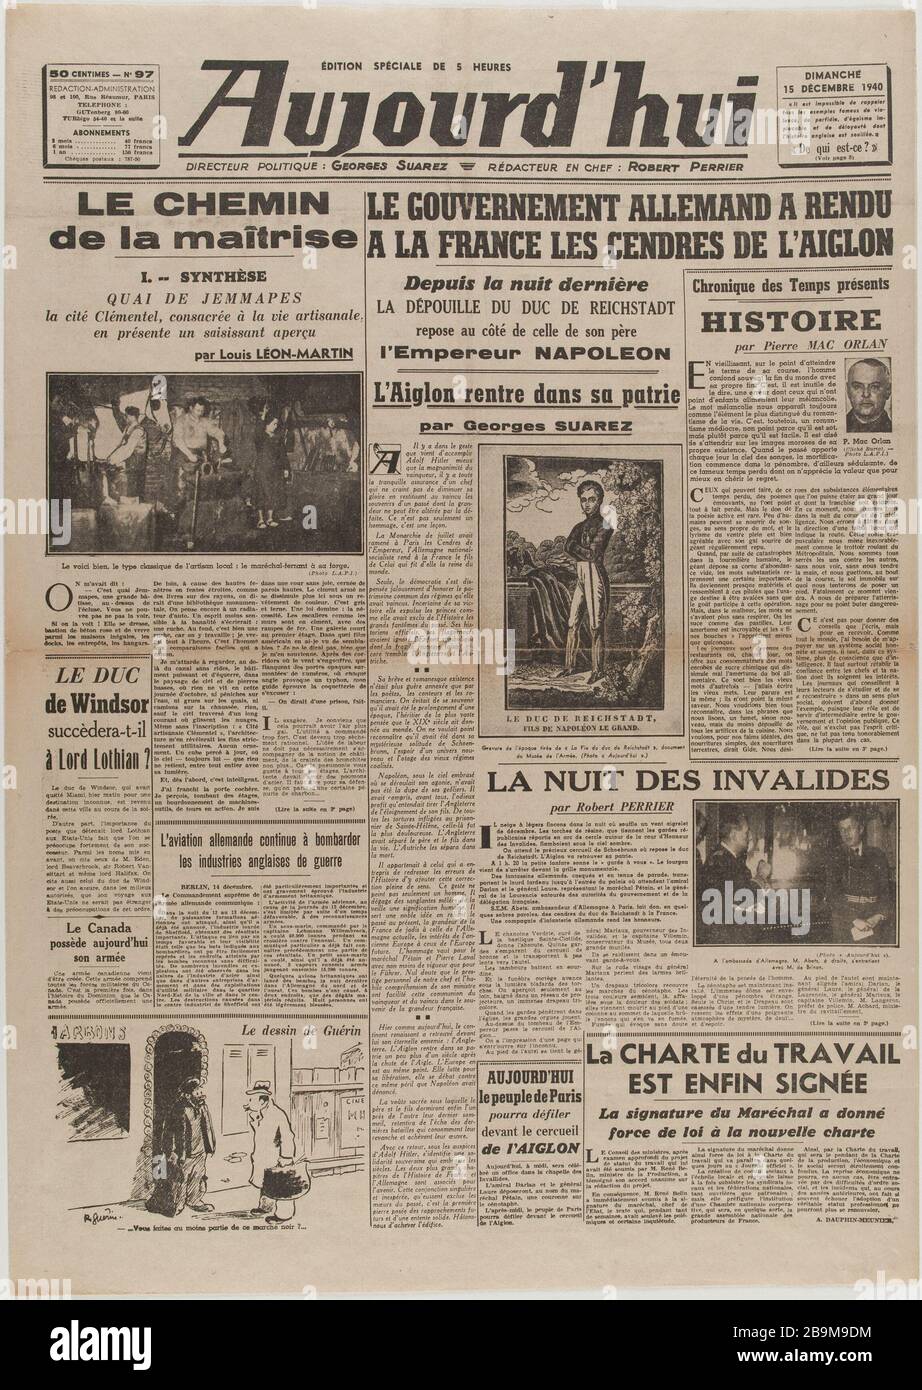 Newspaper 'Today' of December 15, 1940 Journal 'Aujourd'hui' du 15 décembre 1940. Papier imprimé, 1940. Musée du Général Leclerc de Hauteclocque et de la Libération de Paris, musée Jean Moulin. Stock Photo